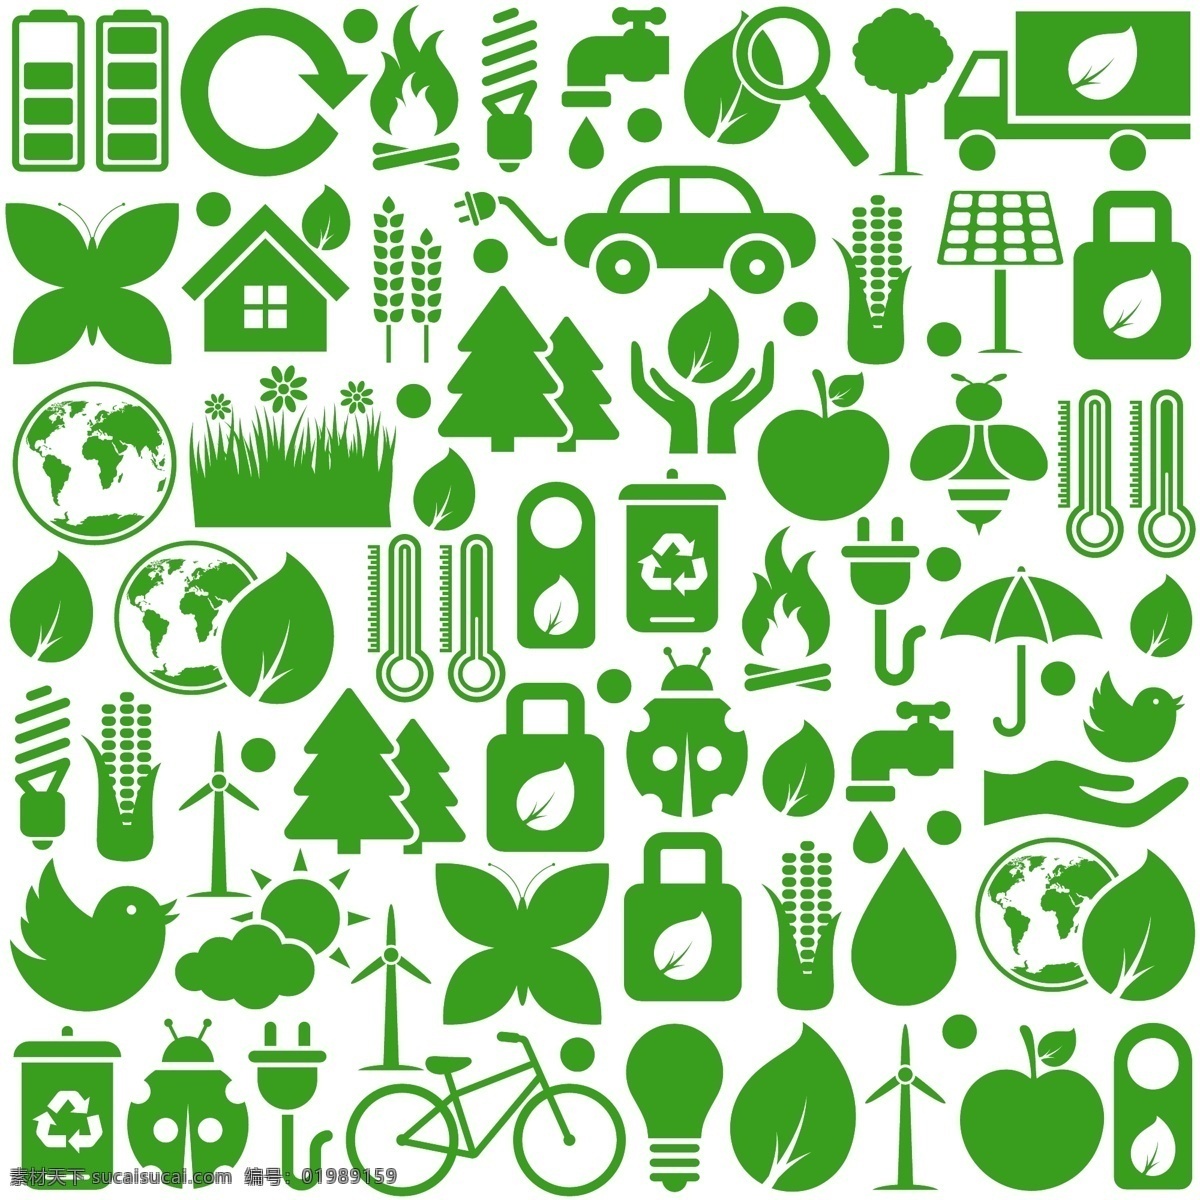 生态 环境保护 图标 矢量 生态环境 环保 标志 绿叶 叶子 绿色植物 环保标志 图标生态 环保绿色 环保环境